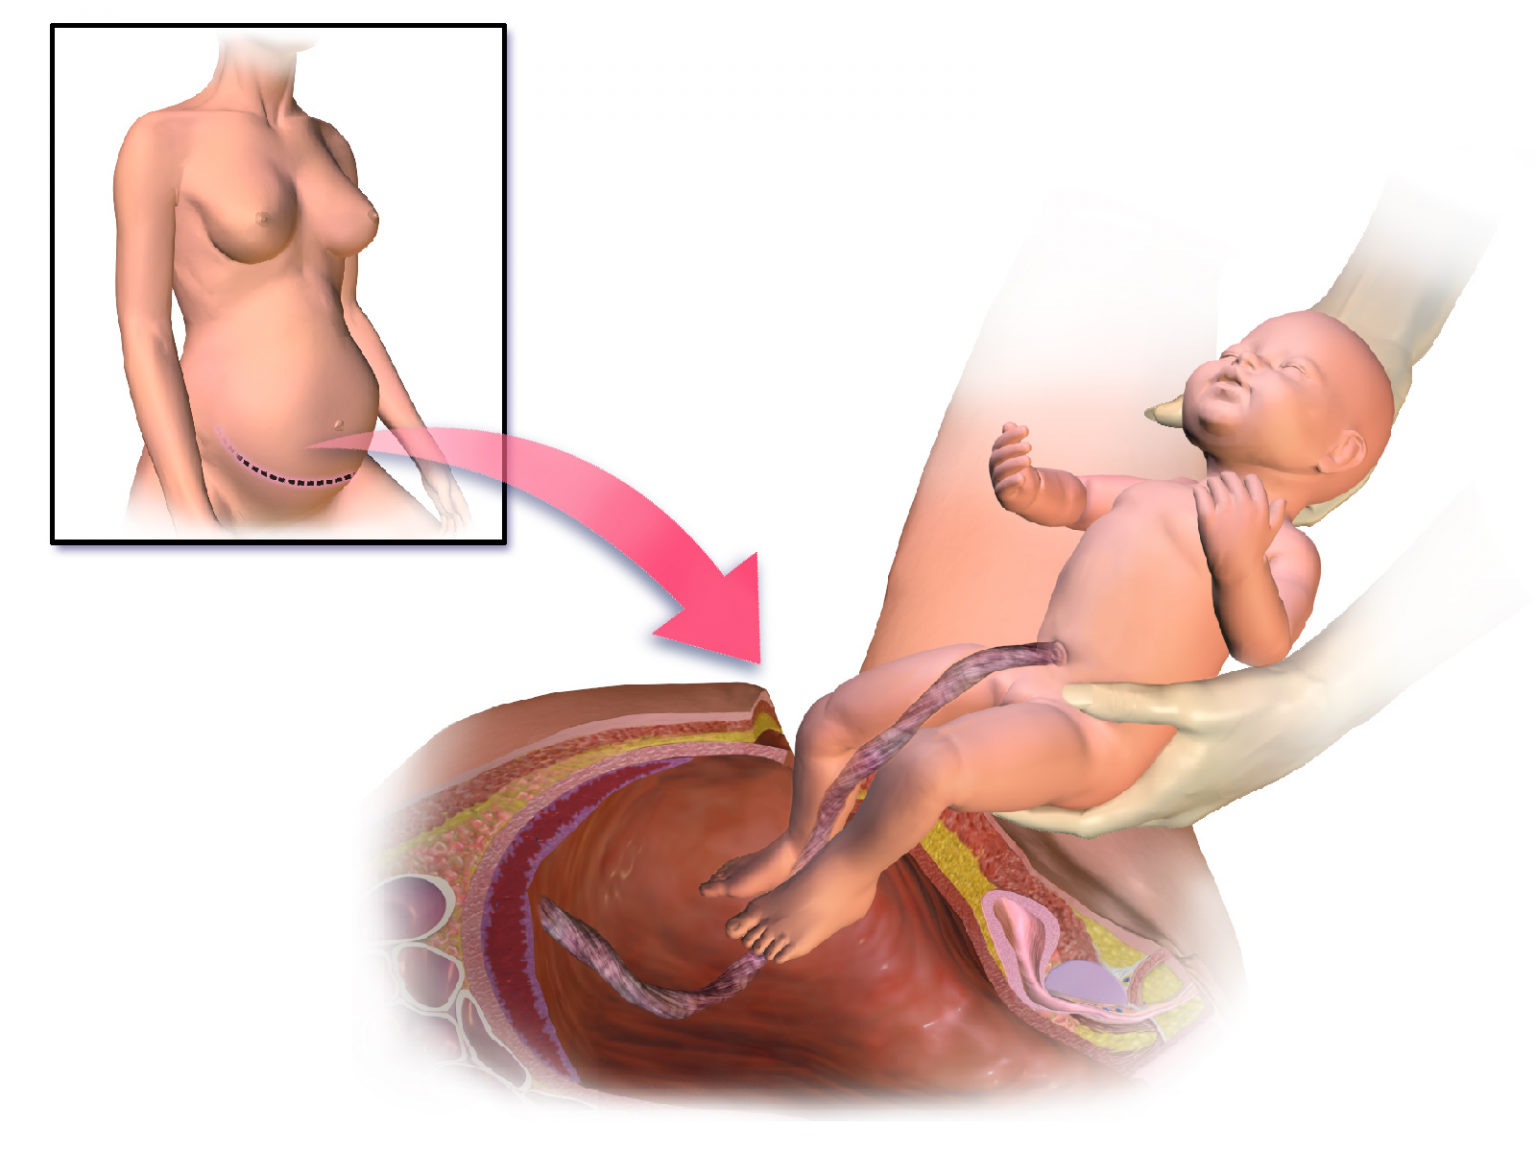 Рождение ребенка кесарево сечение. Родоразрешение кесарево сечение. Разрез после кесарева сечения. Второй беременности после родов